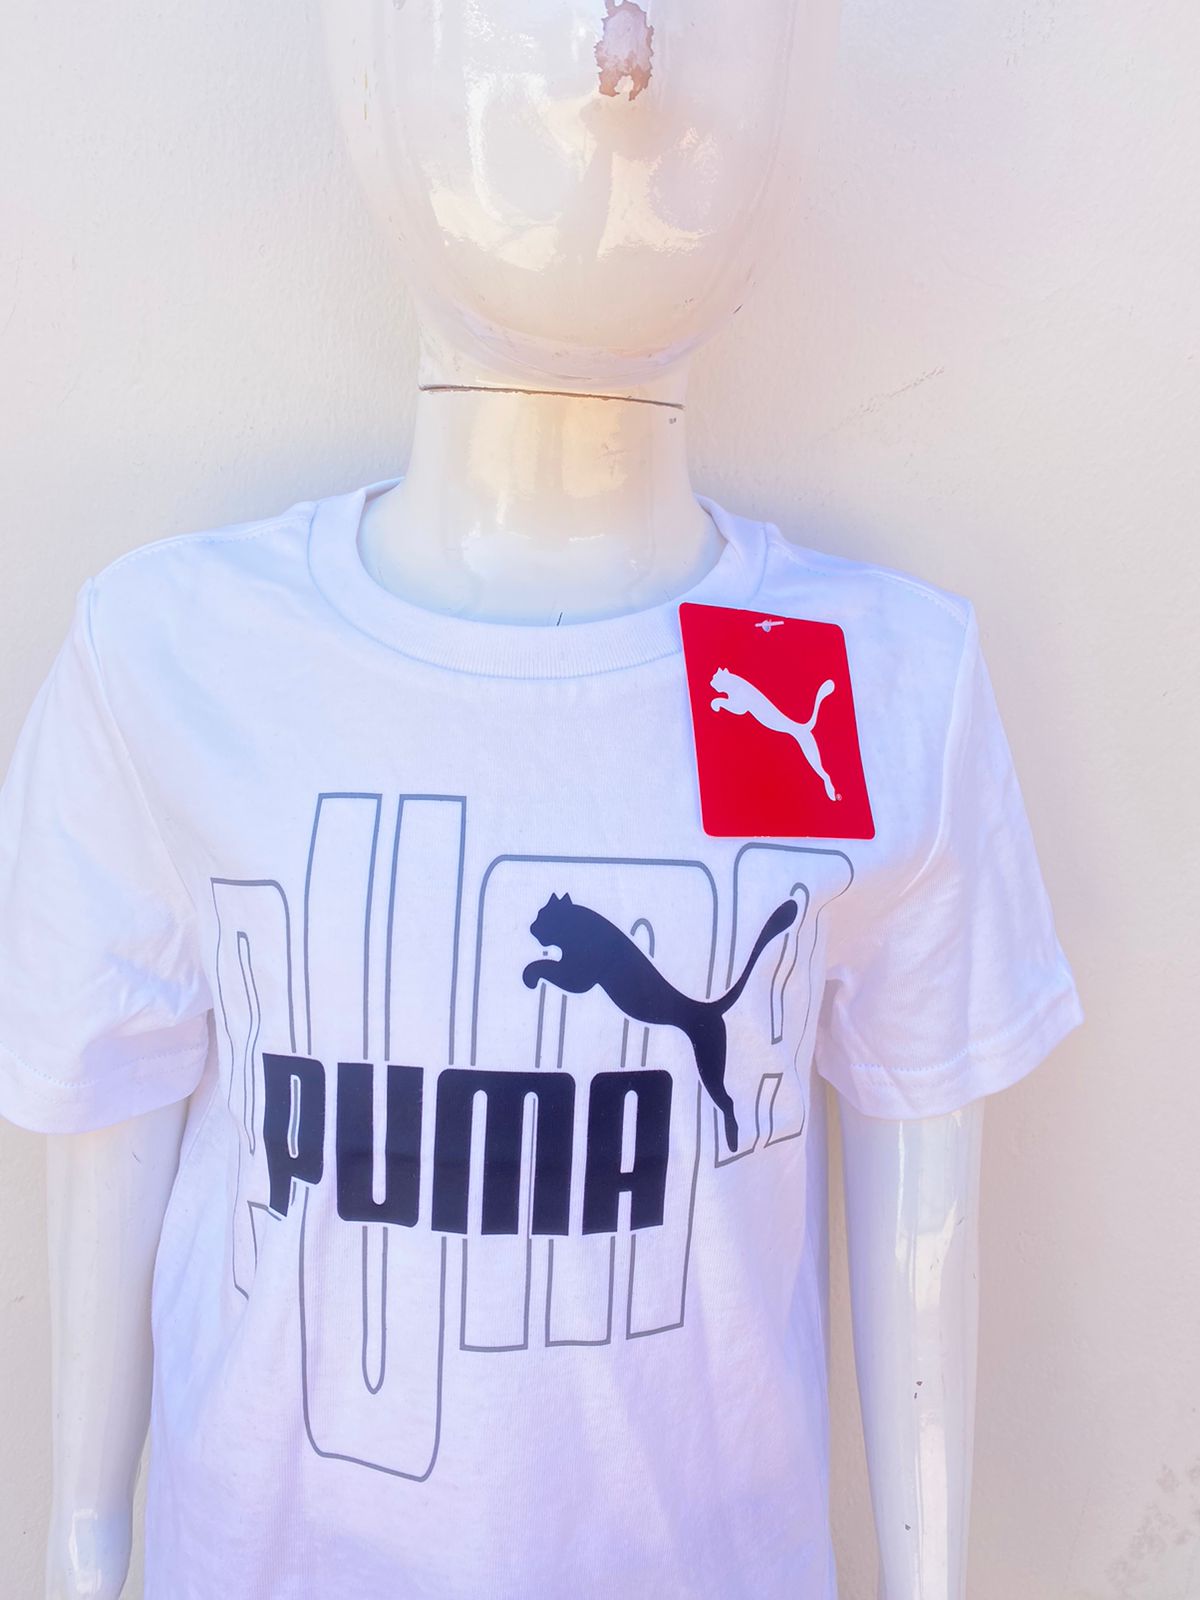 T-shirt Puma original blanco con letras PUMA en negro y logotipo de la marca.